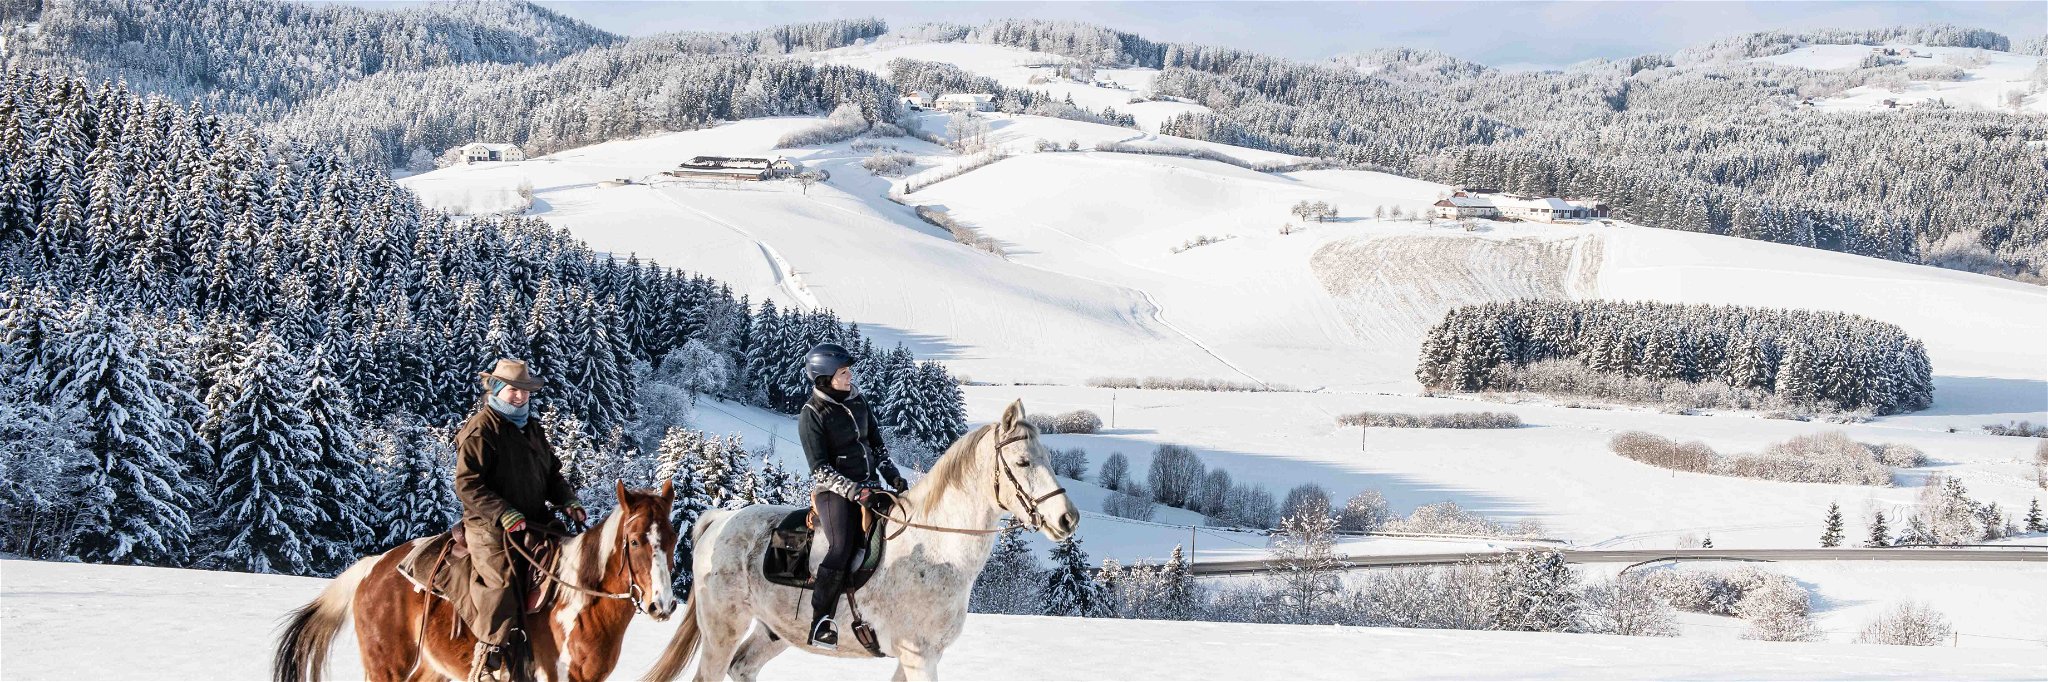 Zwischen dem Winterhimmel und dem Pulverschnee ein Pferderücken: Glücksgefühle kommen im Galopp.